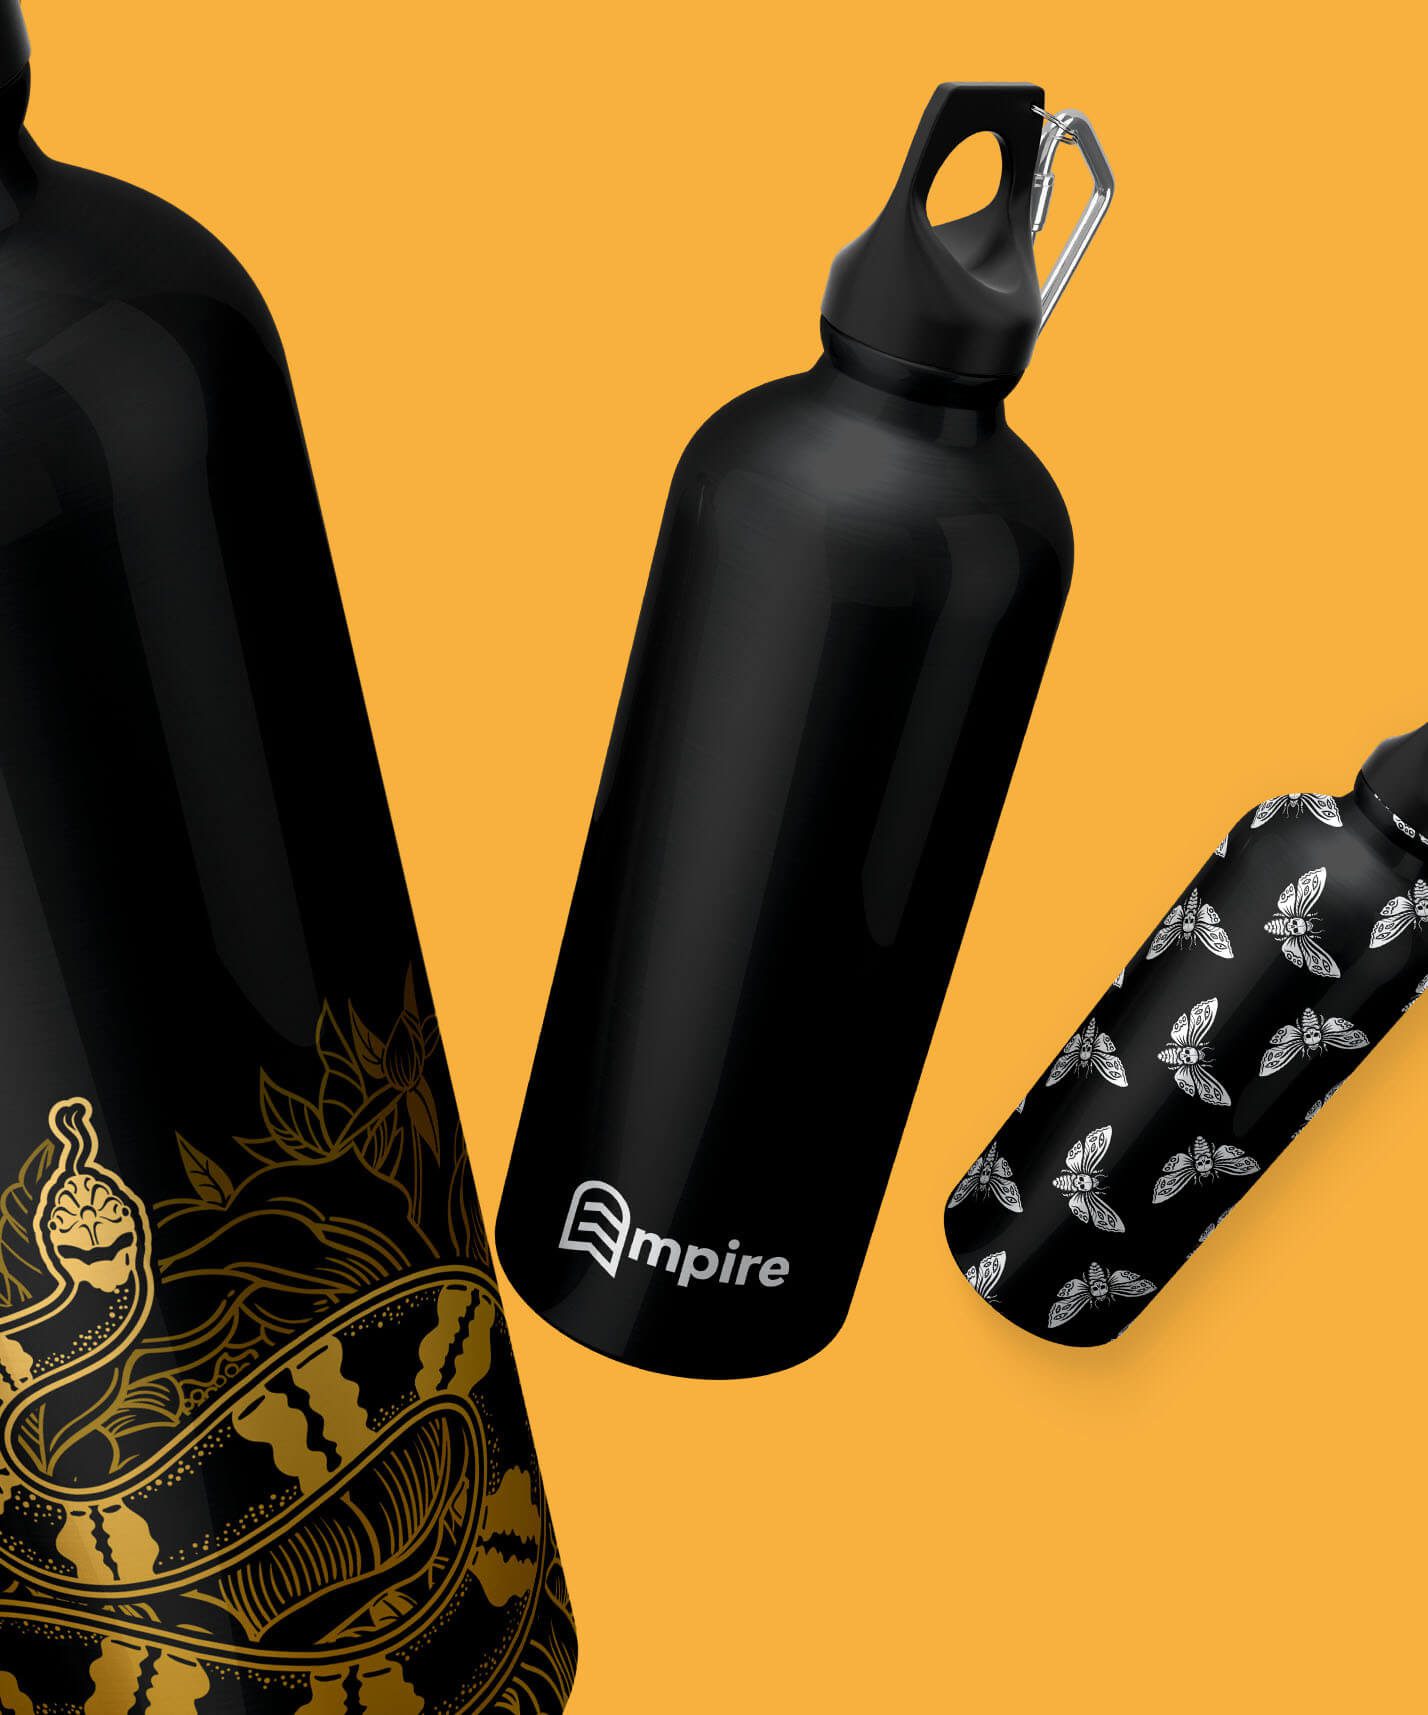 Empire Project Branding Skateboard Black Bottles